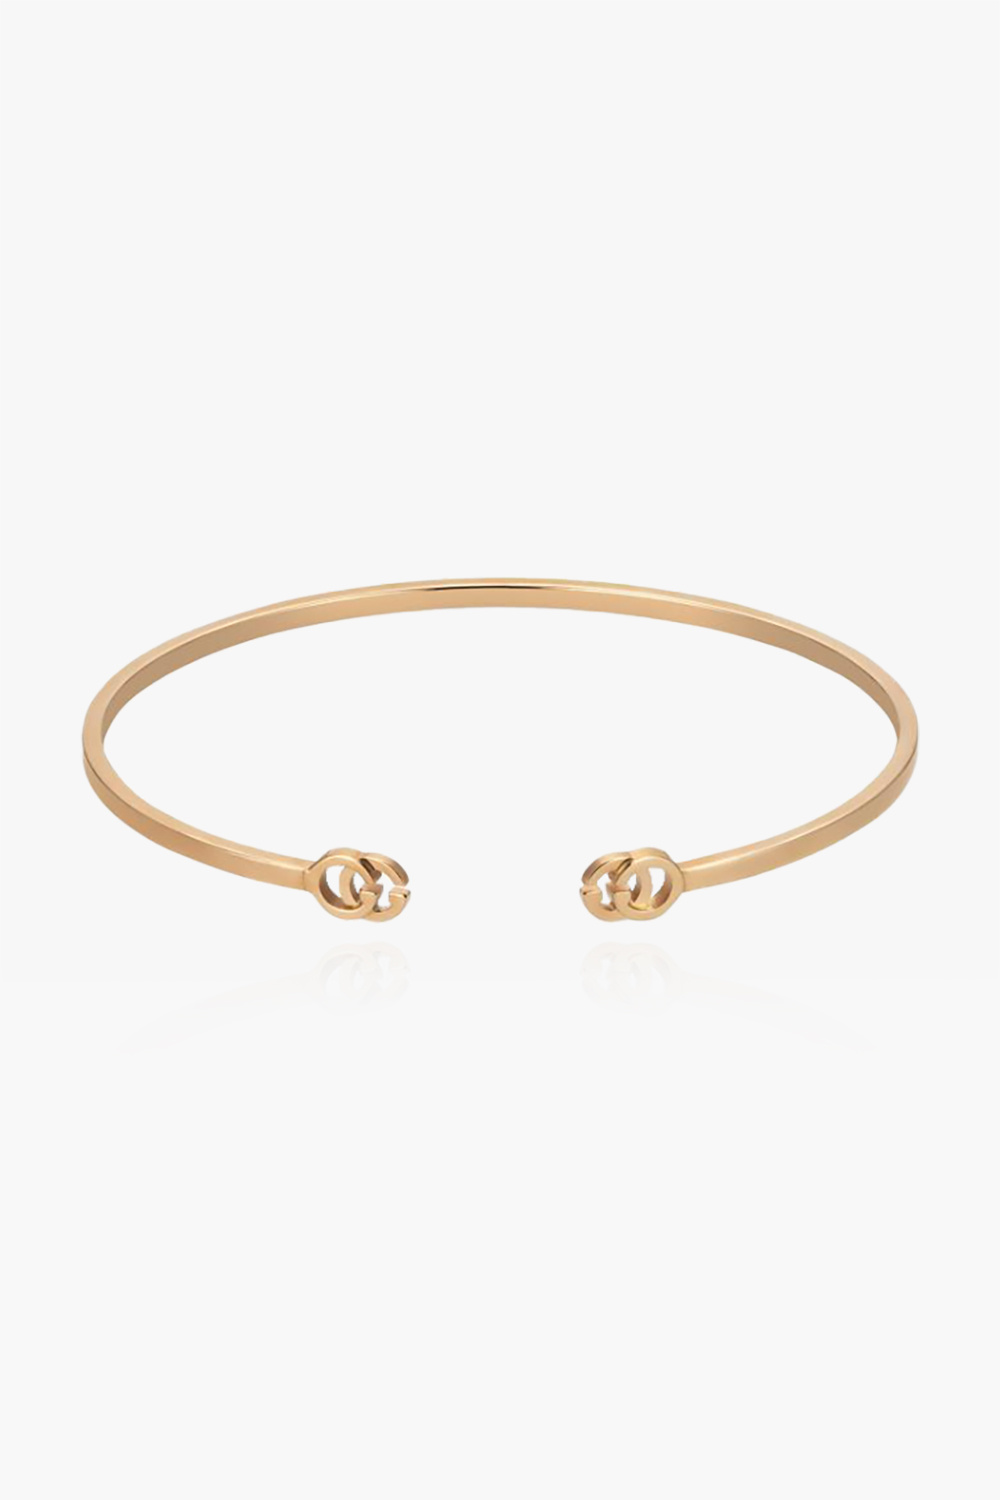 gucci jersey Rose gold bracelet